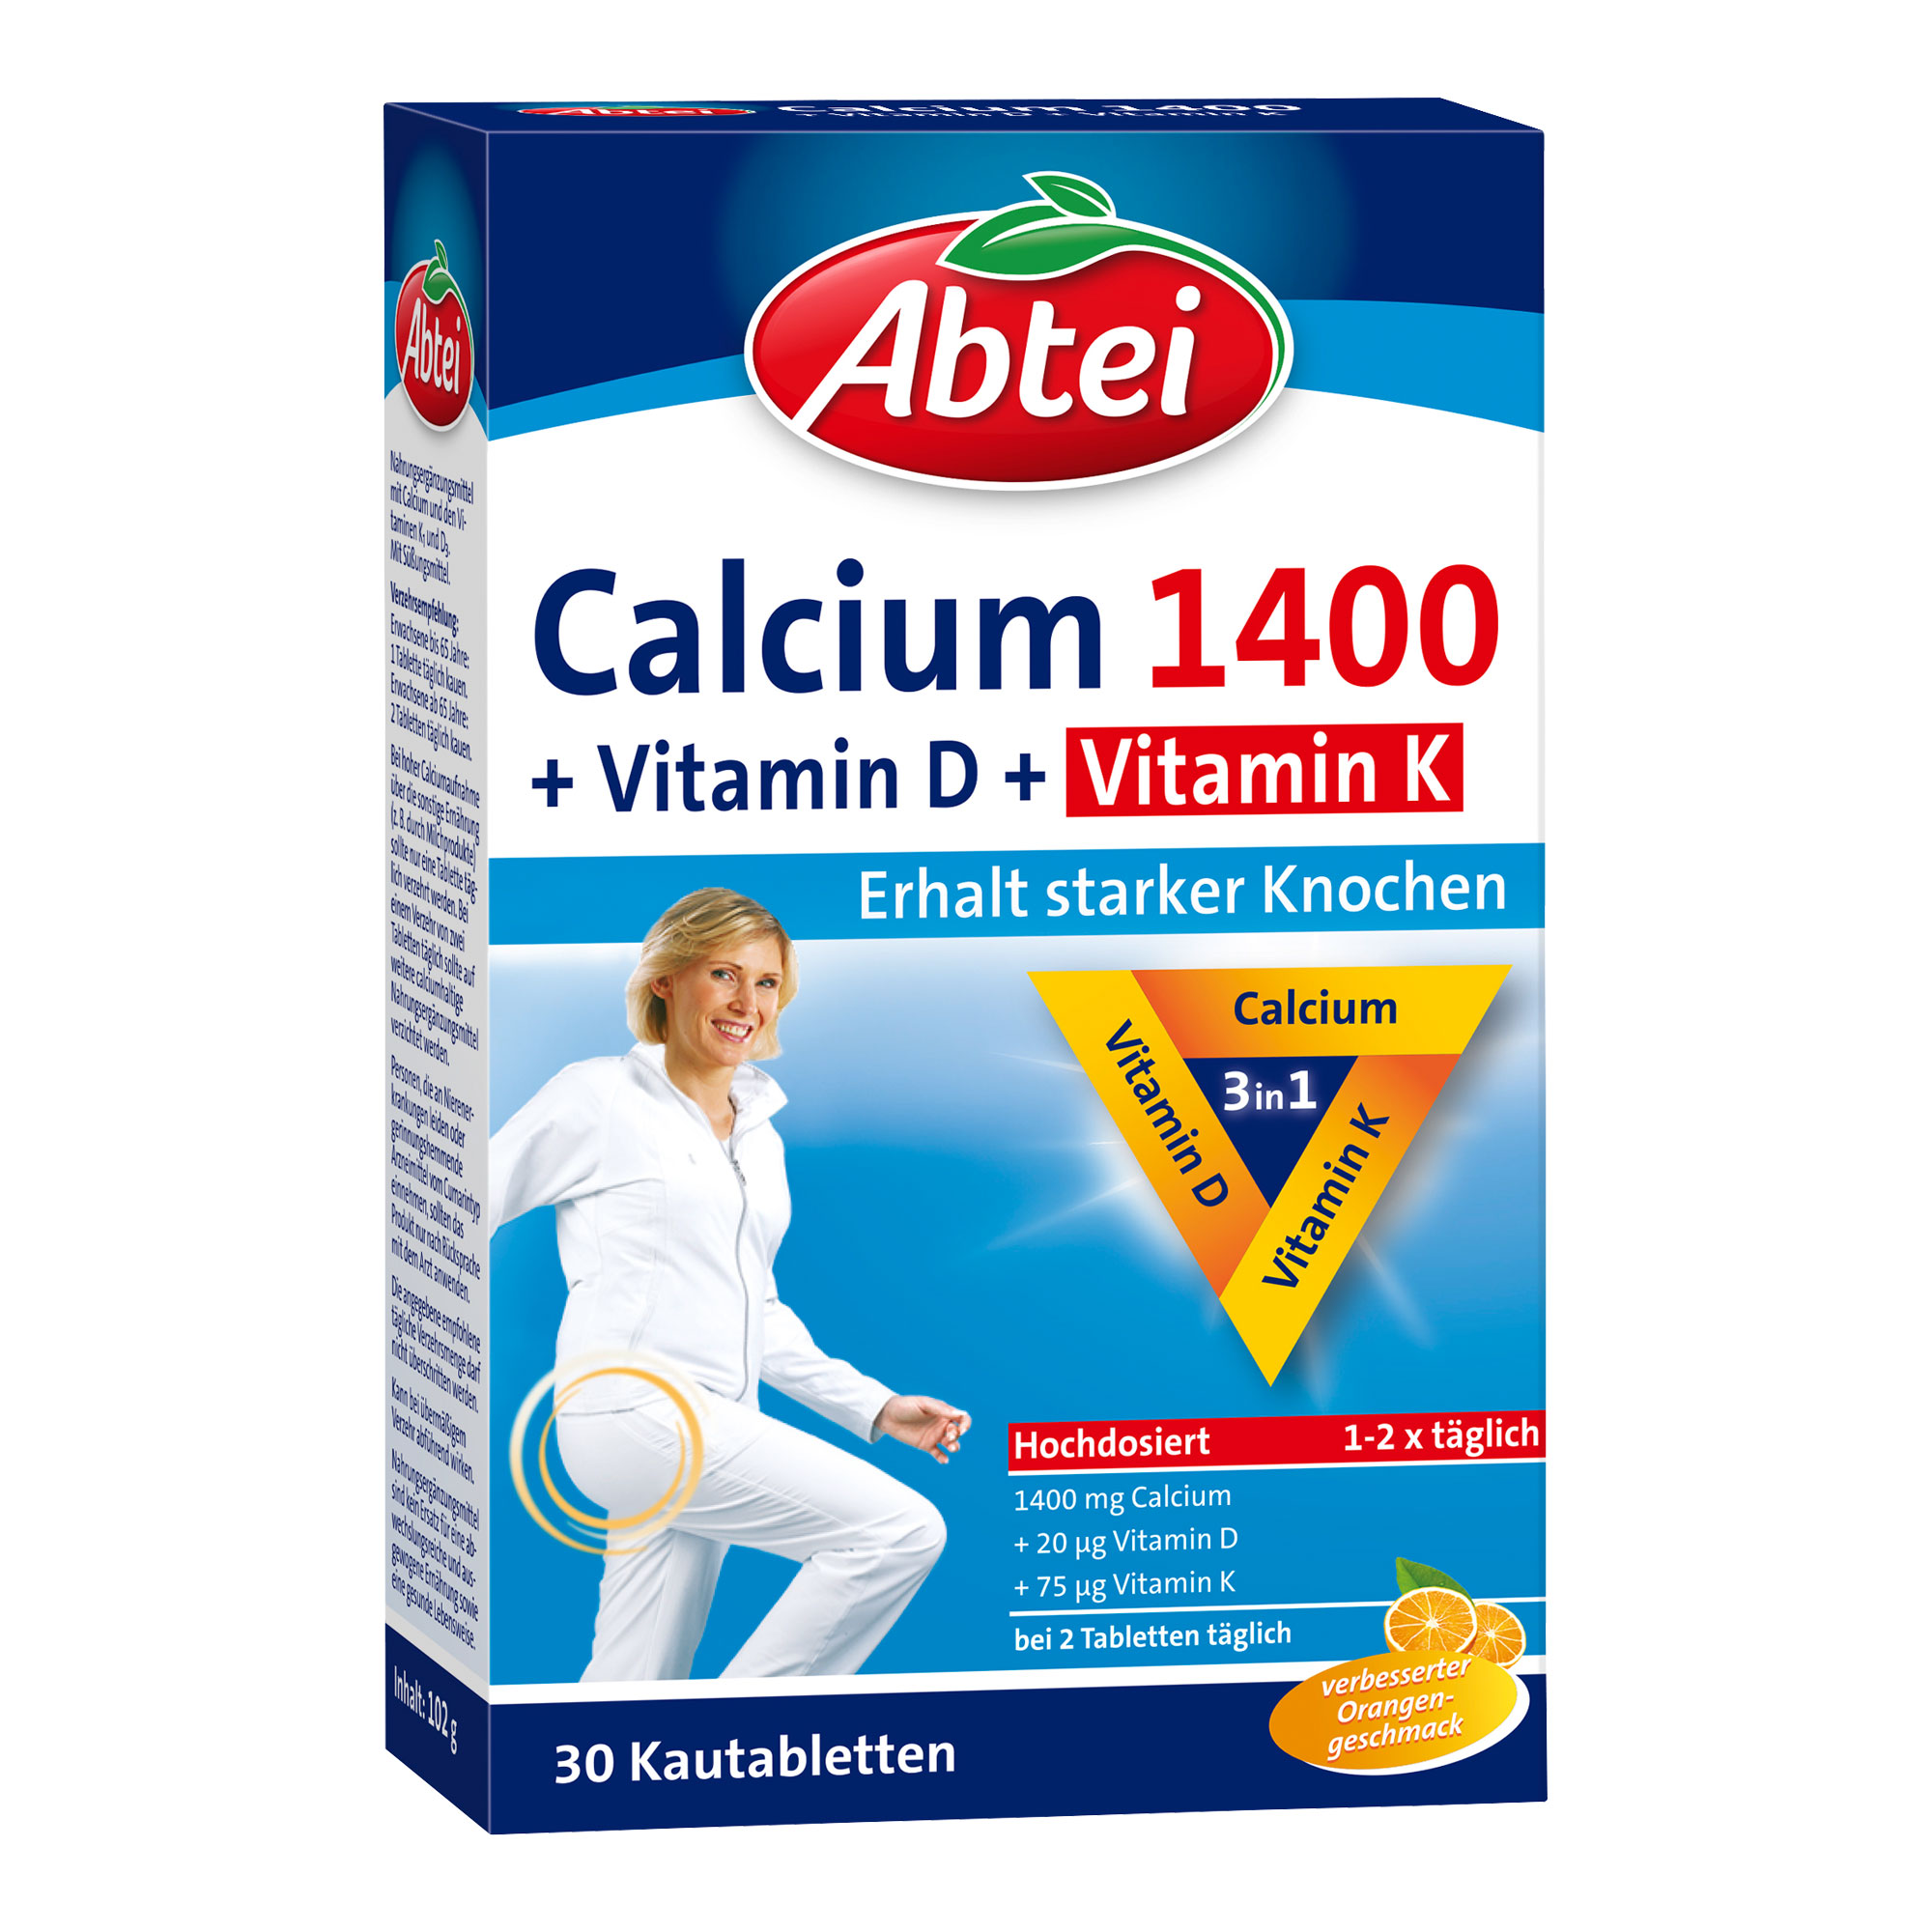 Nahrungsergänzungsmittel mit Calcium und den Vitaminen K1 und D3.